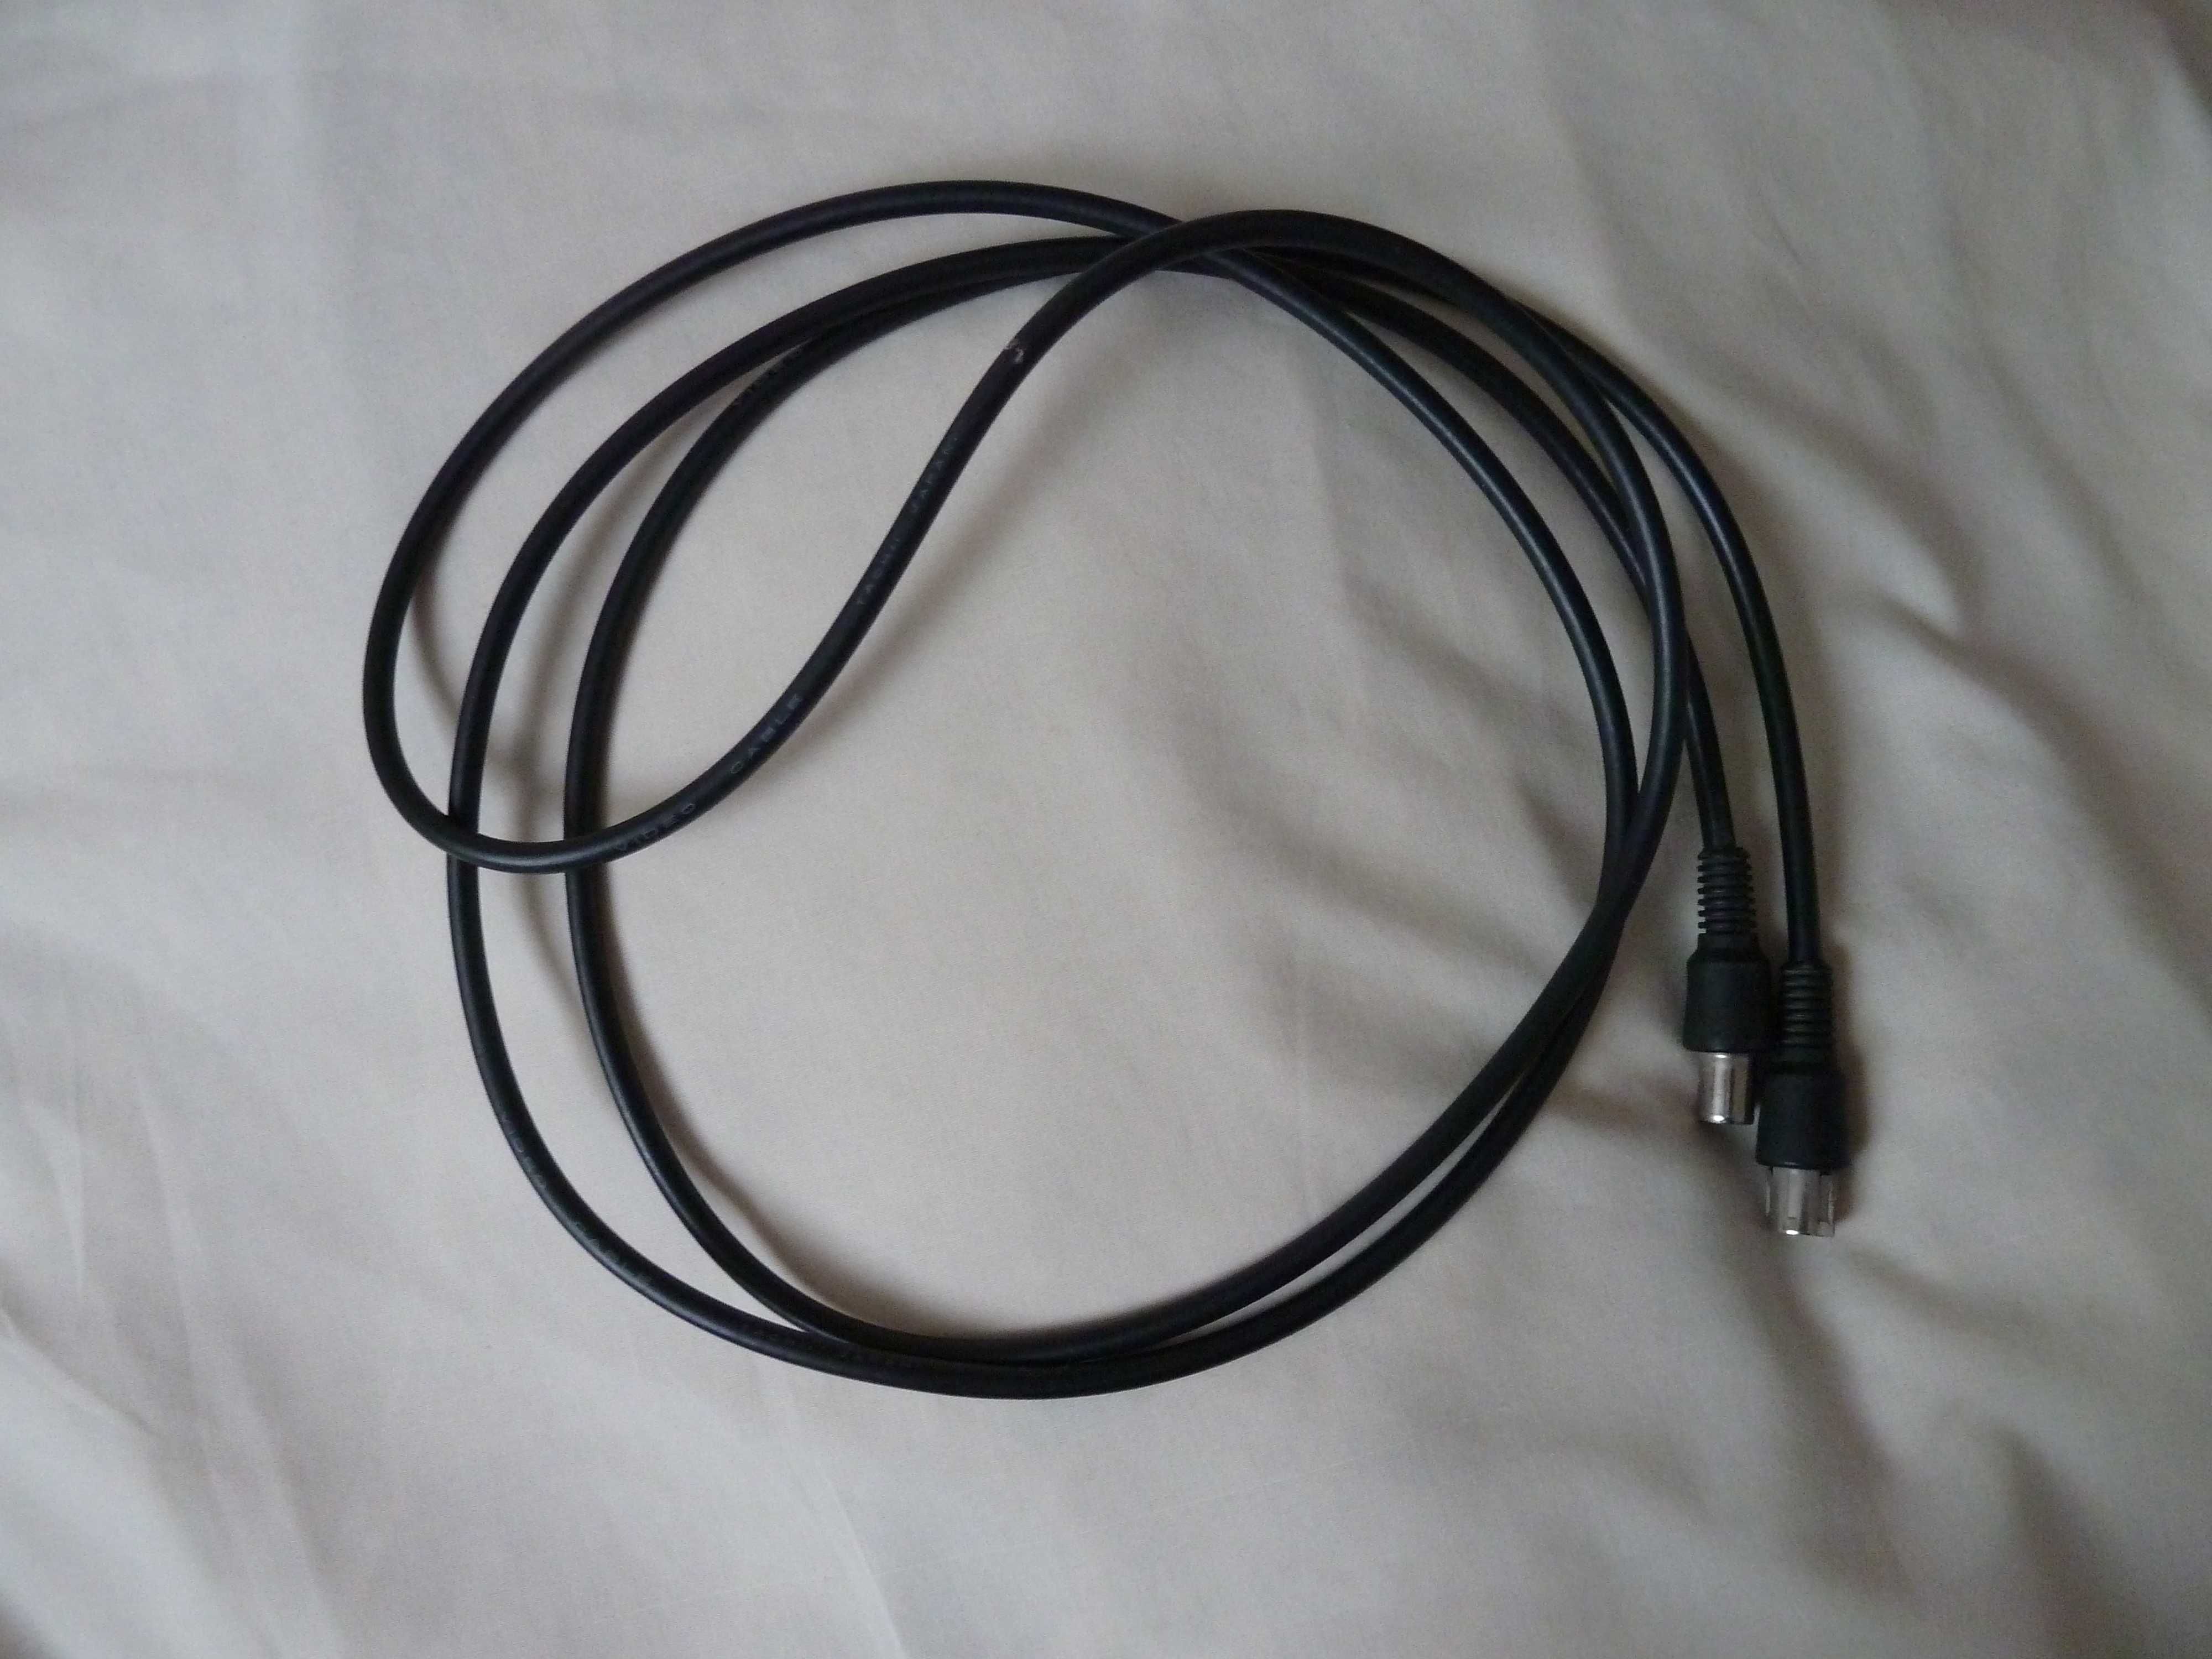 przejściówka kabel koncentryczny 2 m, zakończony wtykami żeński/męski